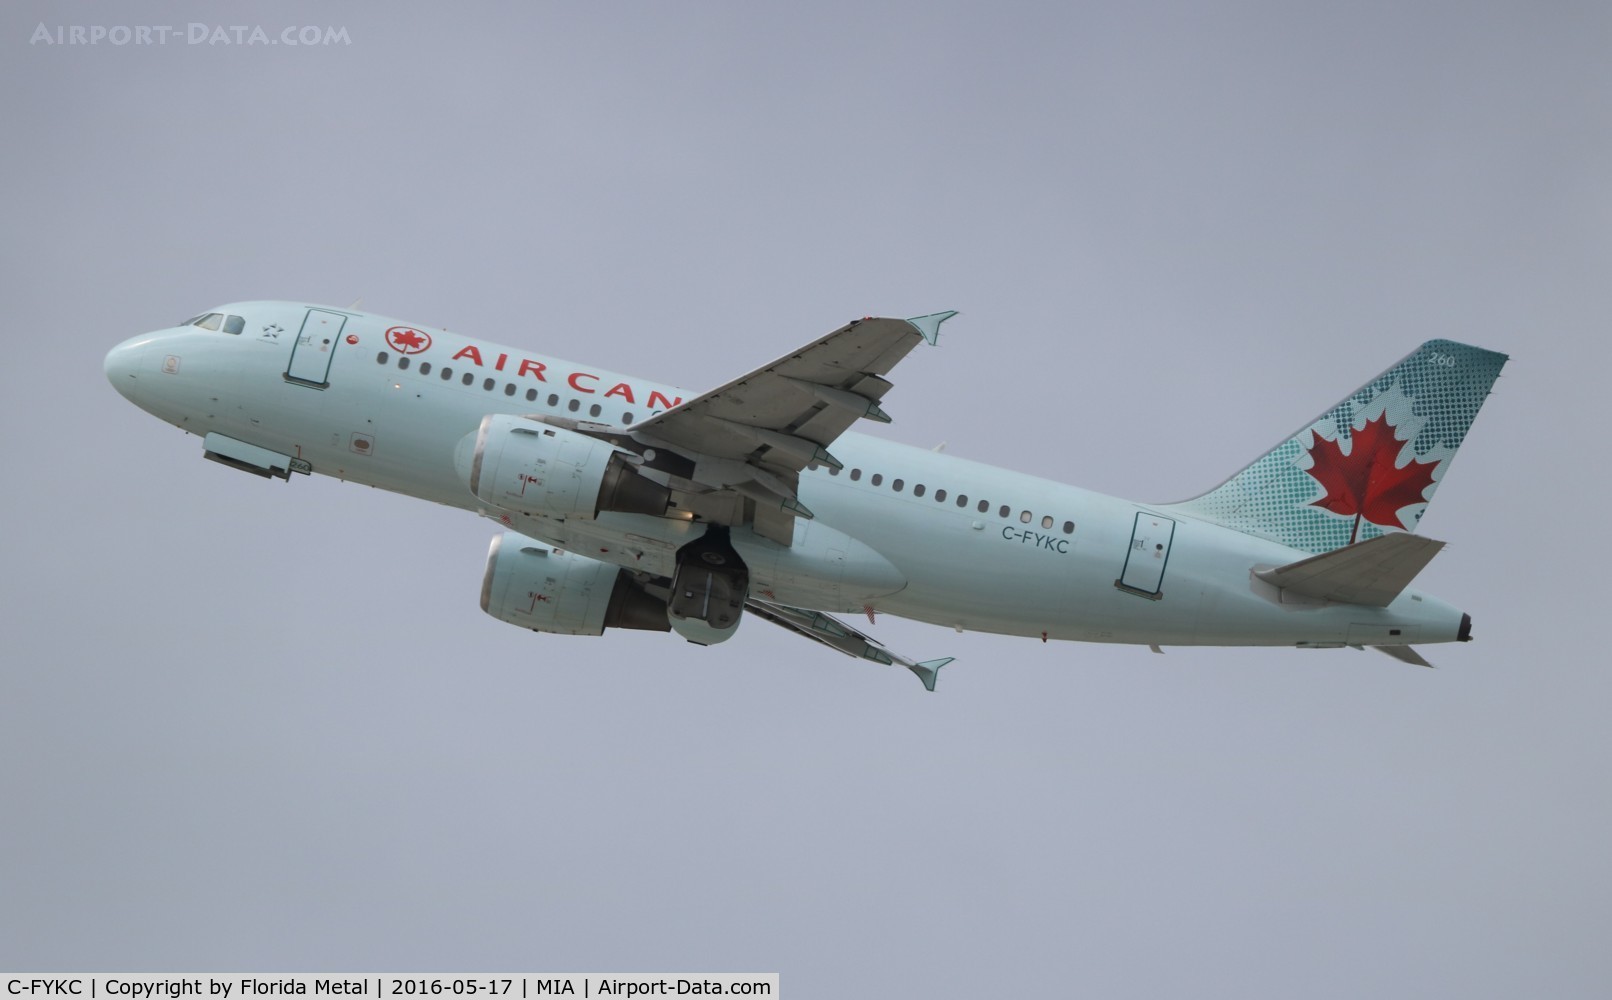 C-FYKC, 1997 Airbus A319-114 C/N 691, Air Canada